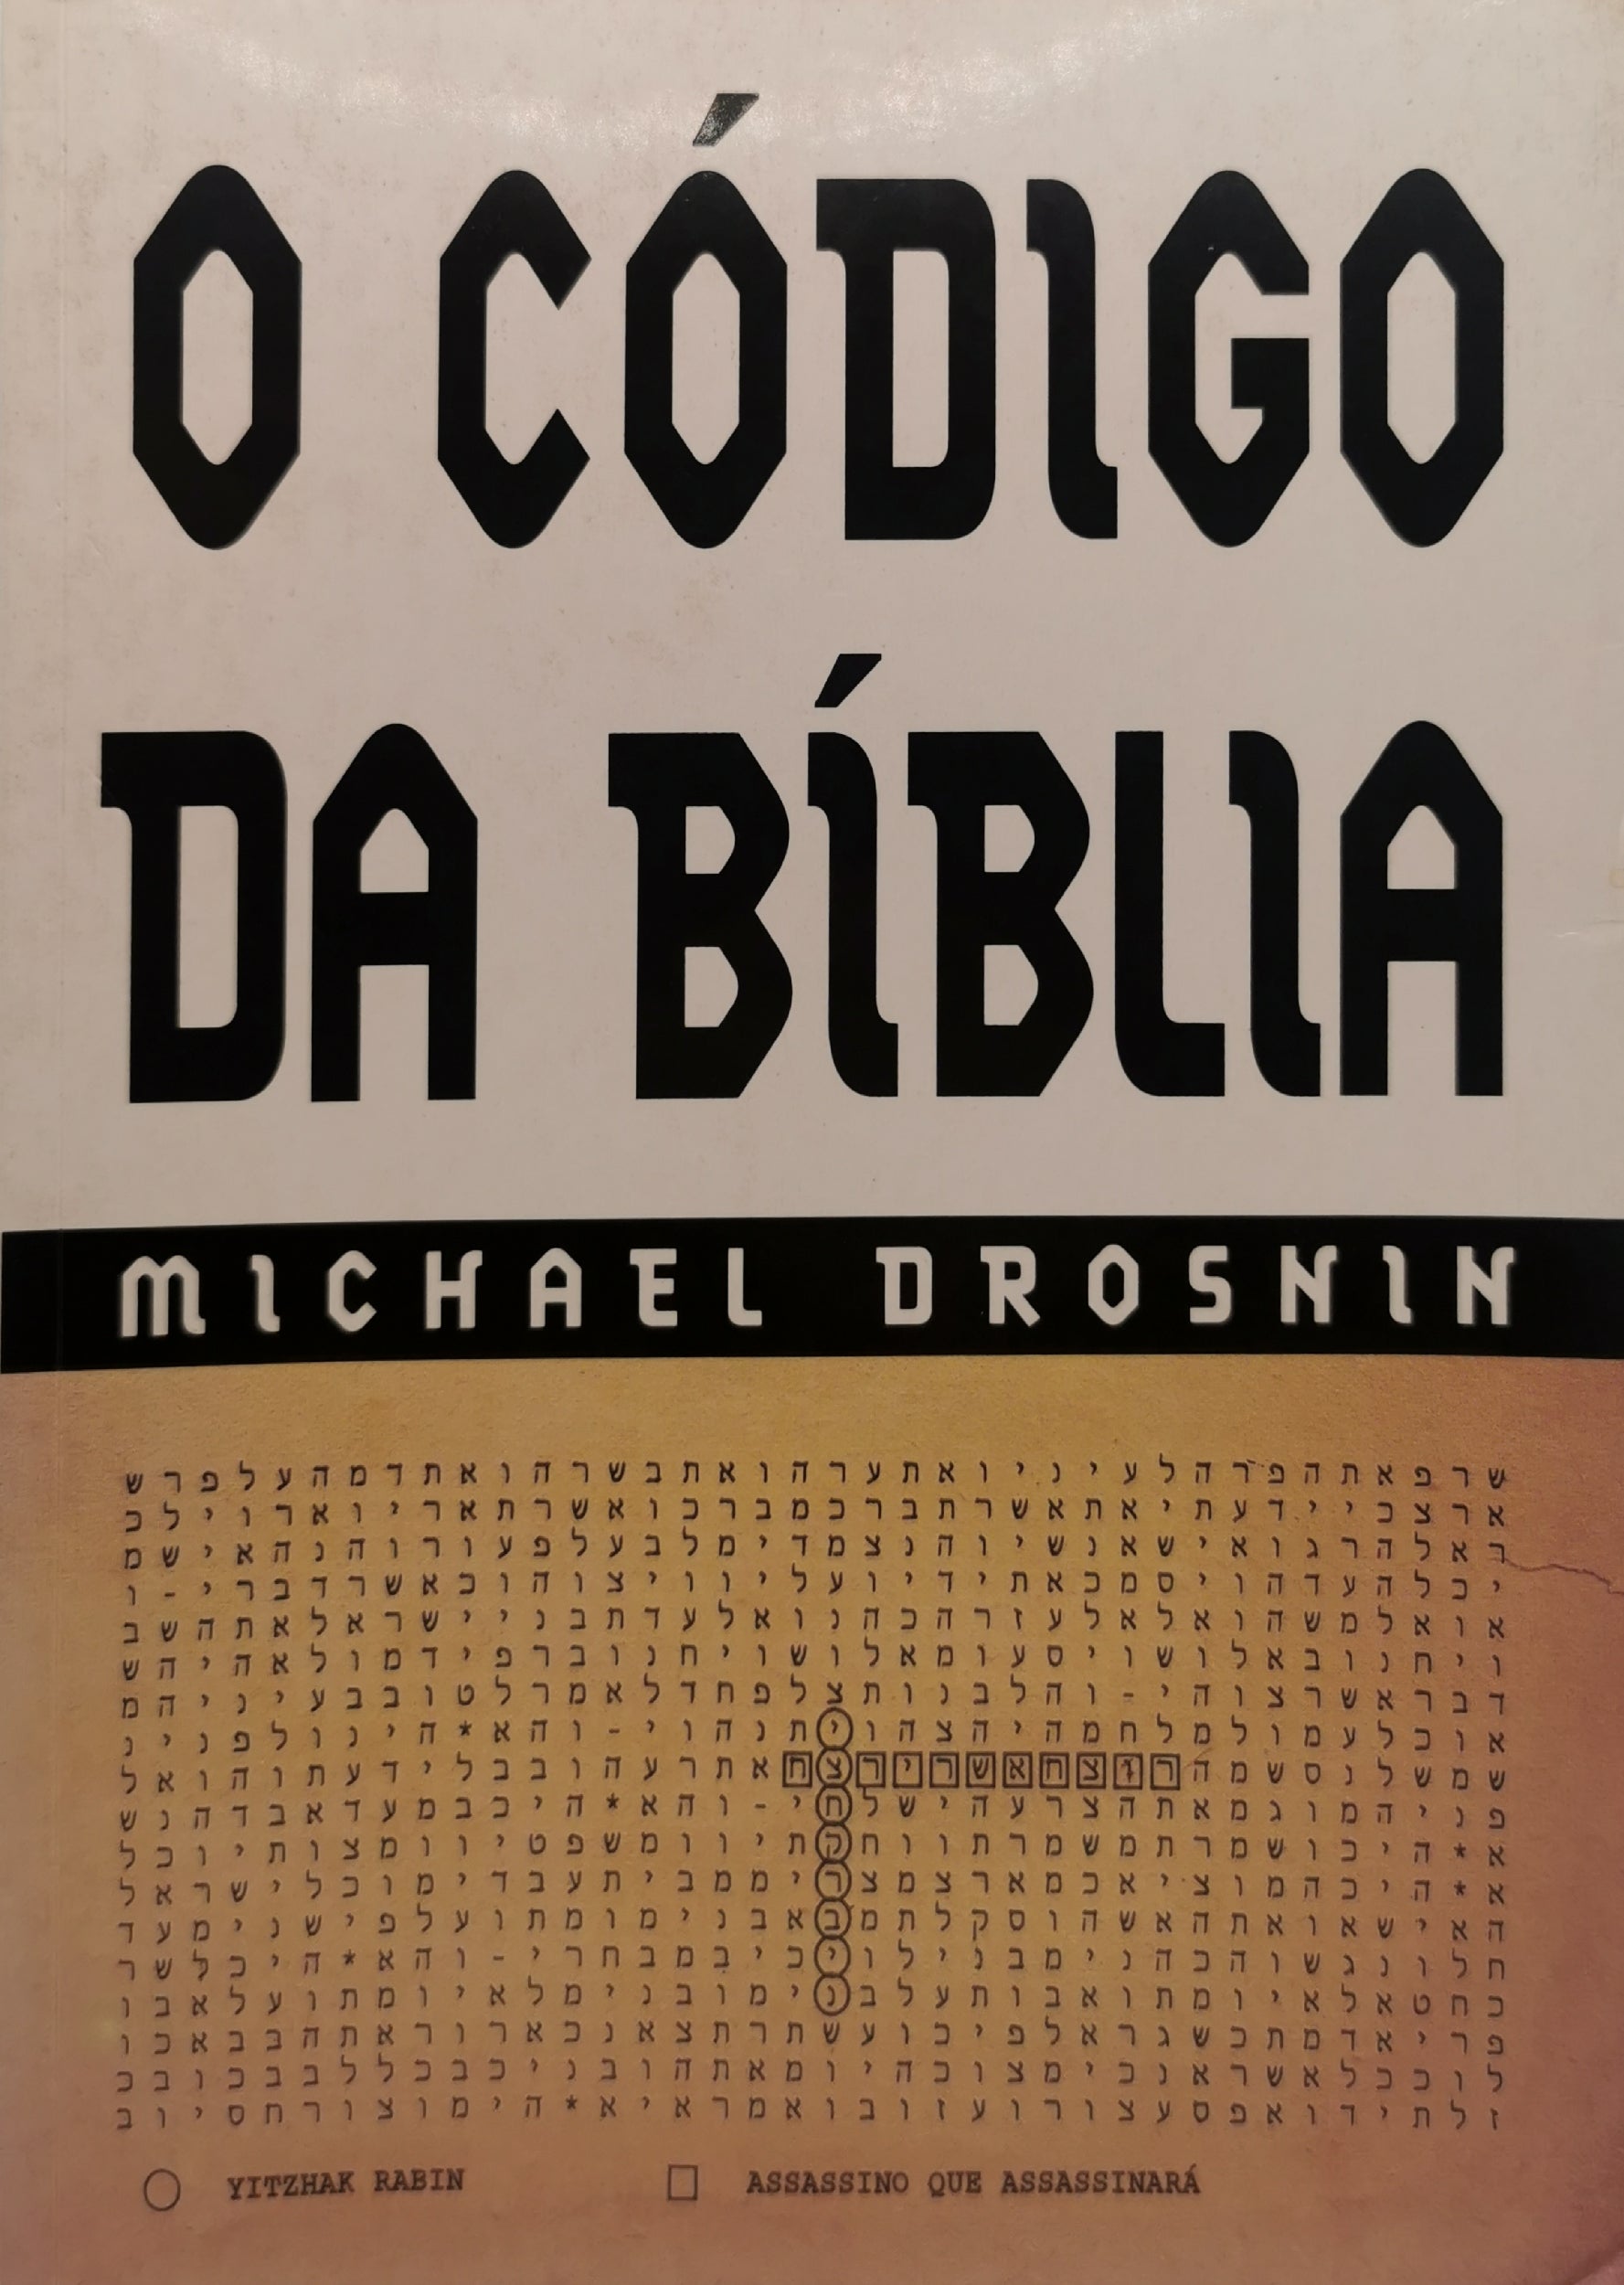 Livro O Código da Bíblia de Michael Drosnin - USADO